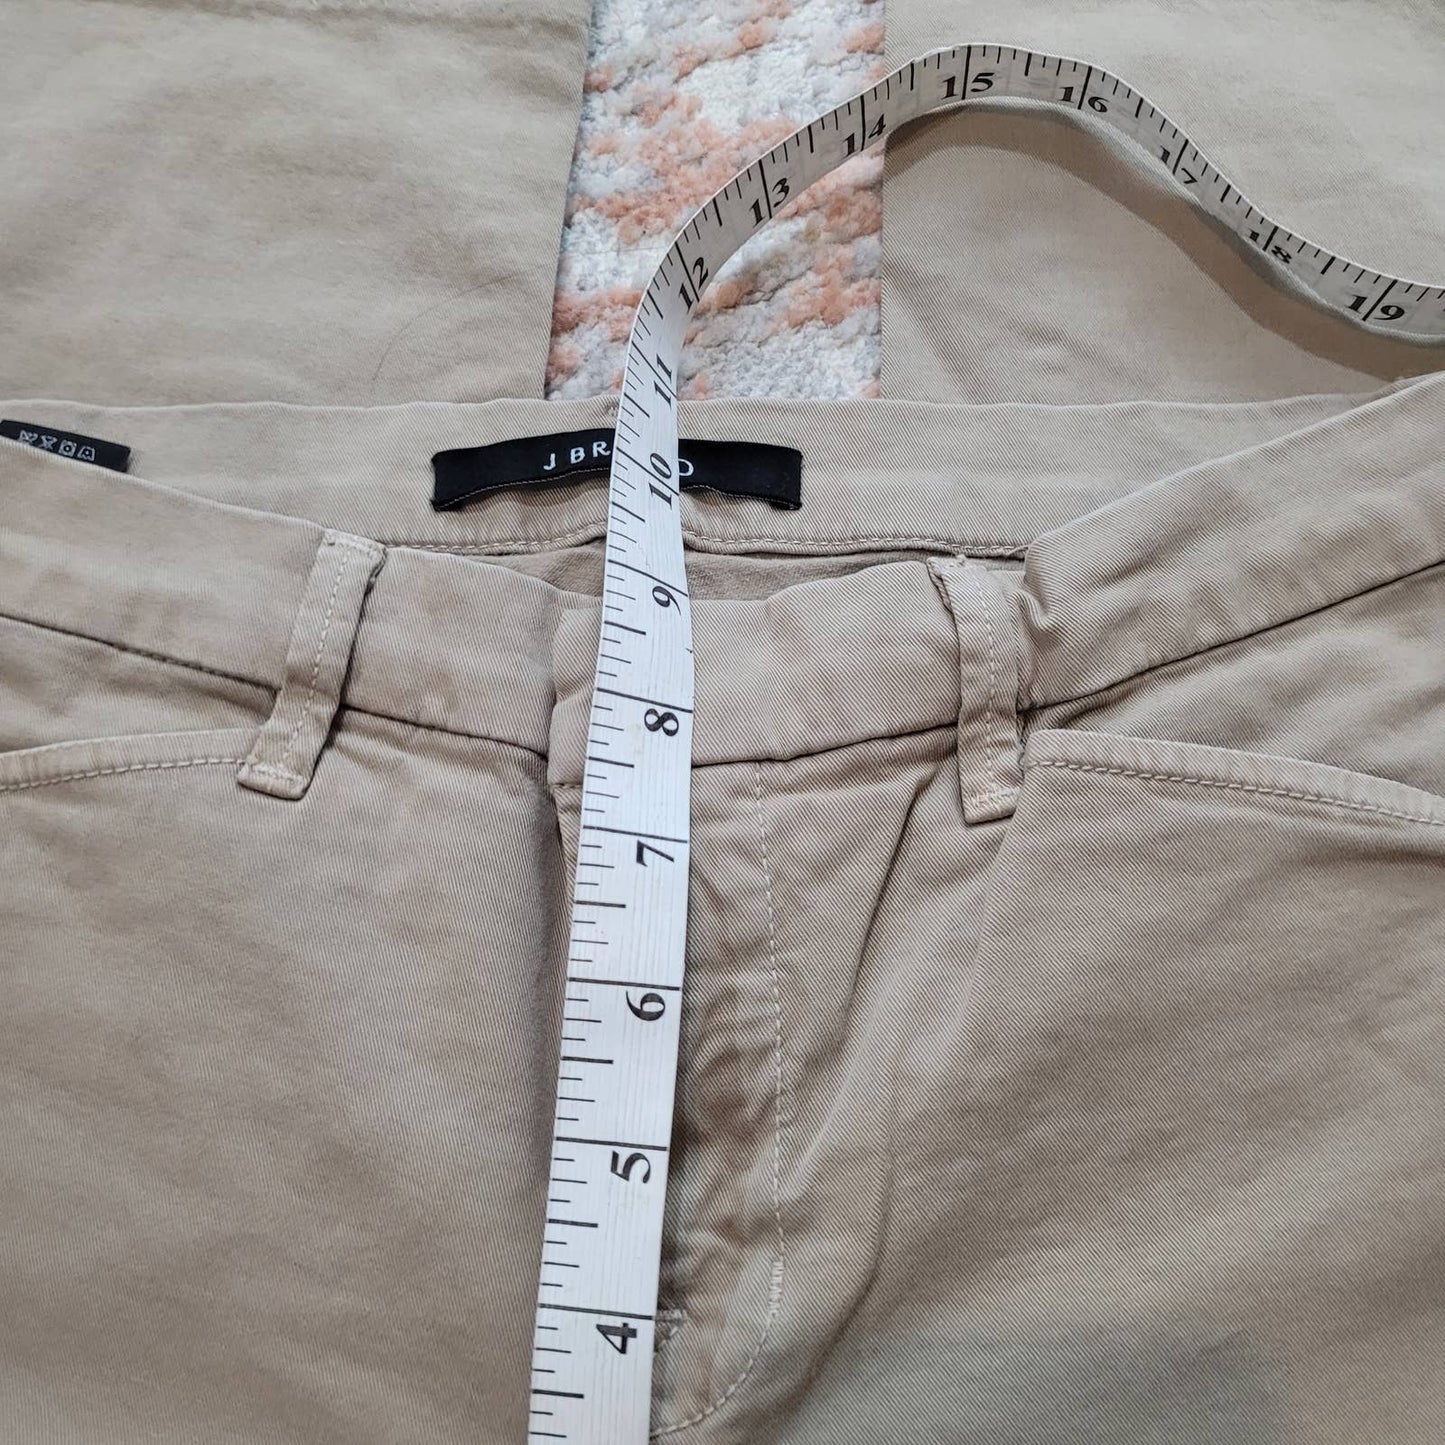 J Brand Pants - Size 28